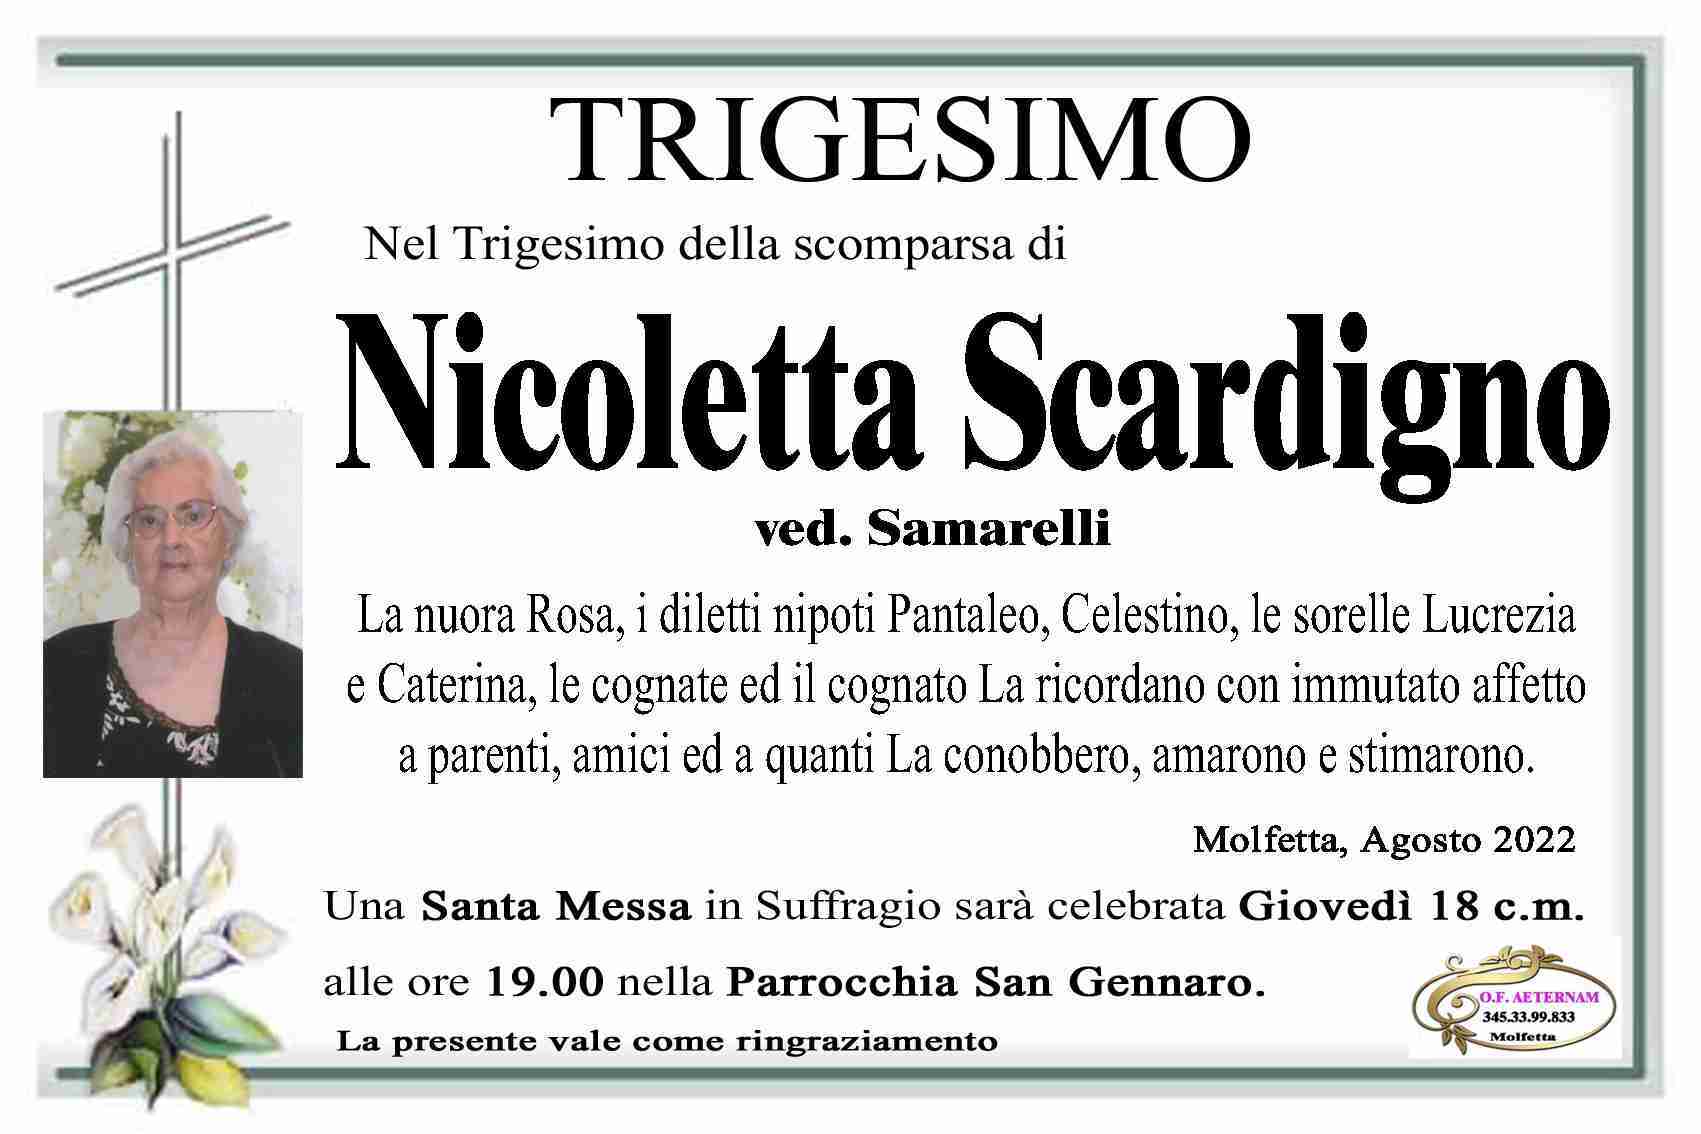 Nicoletta Scardigno